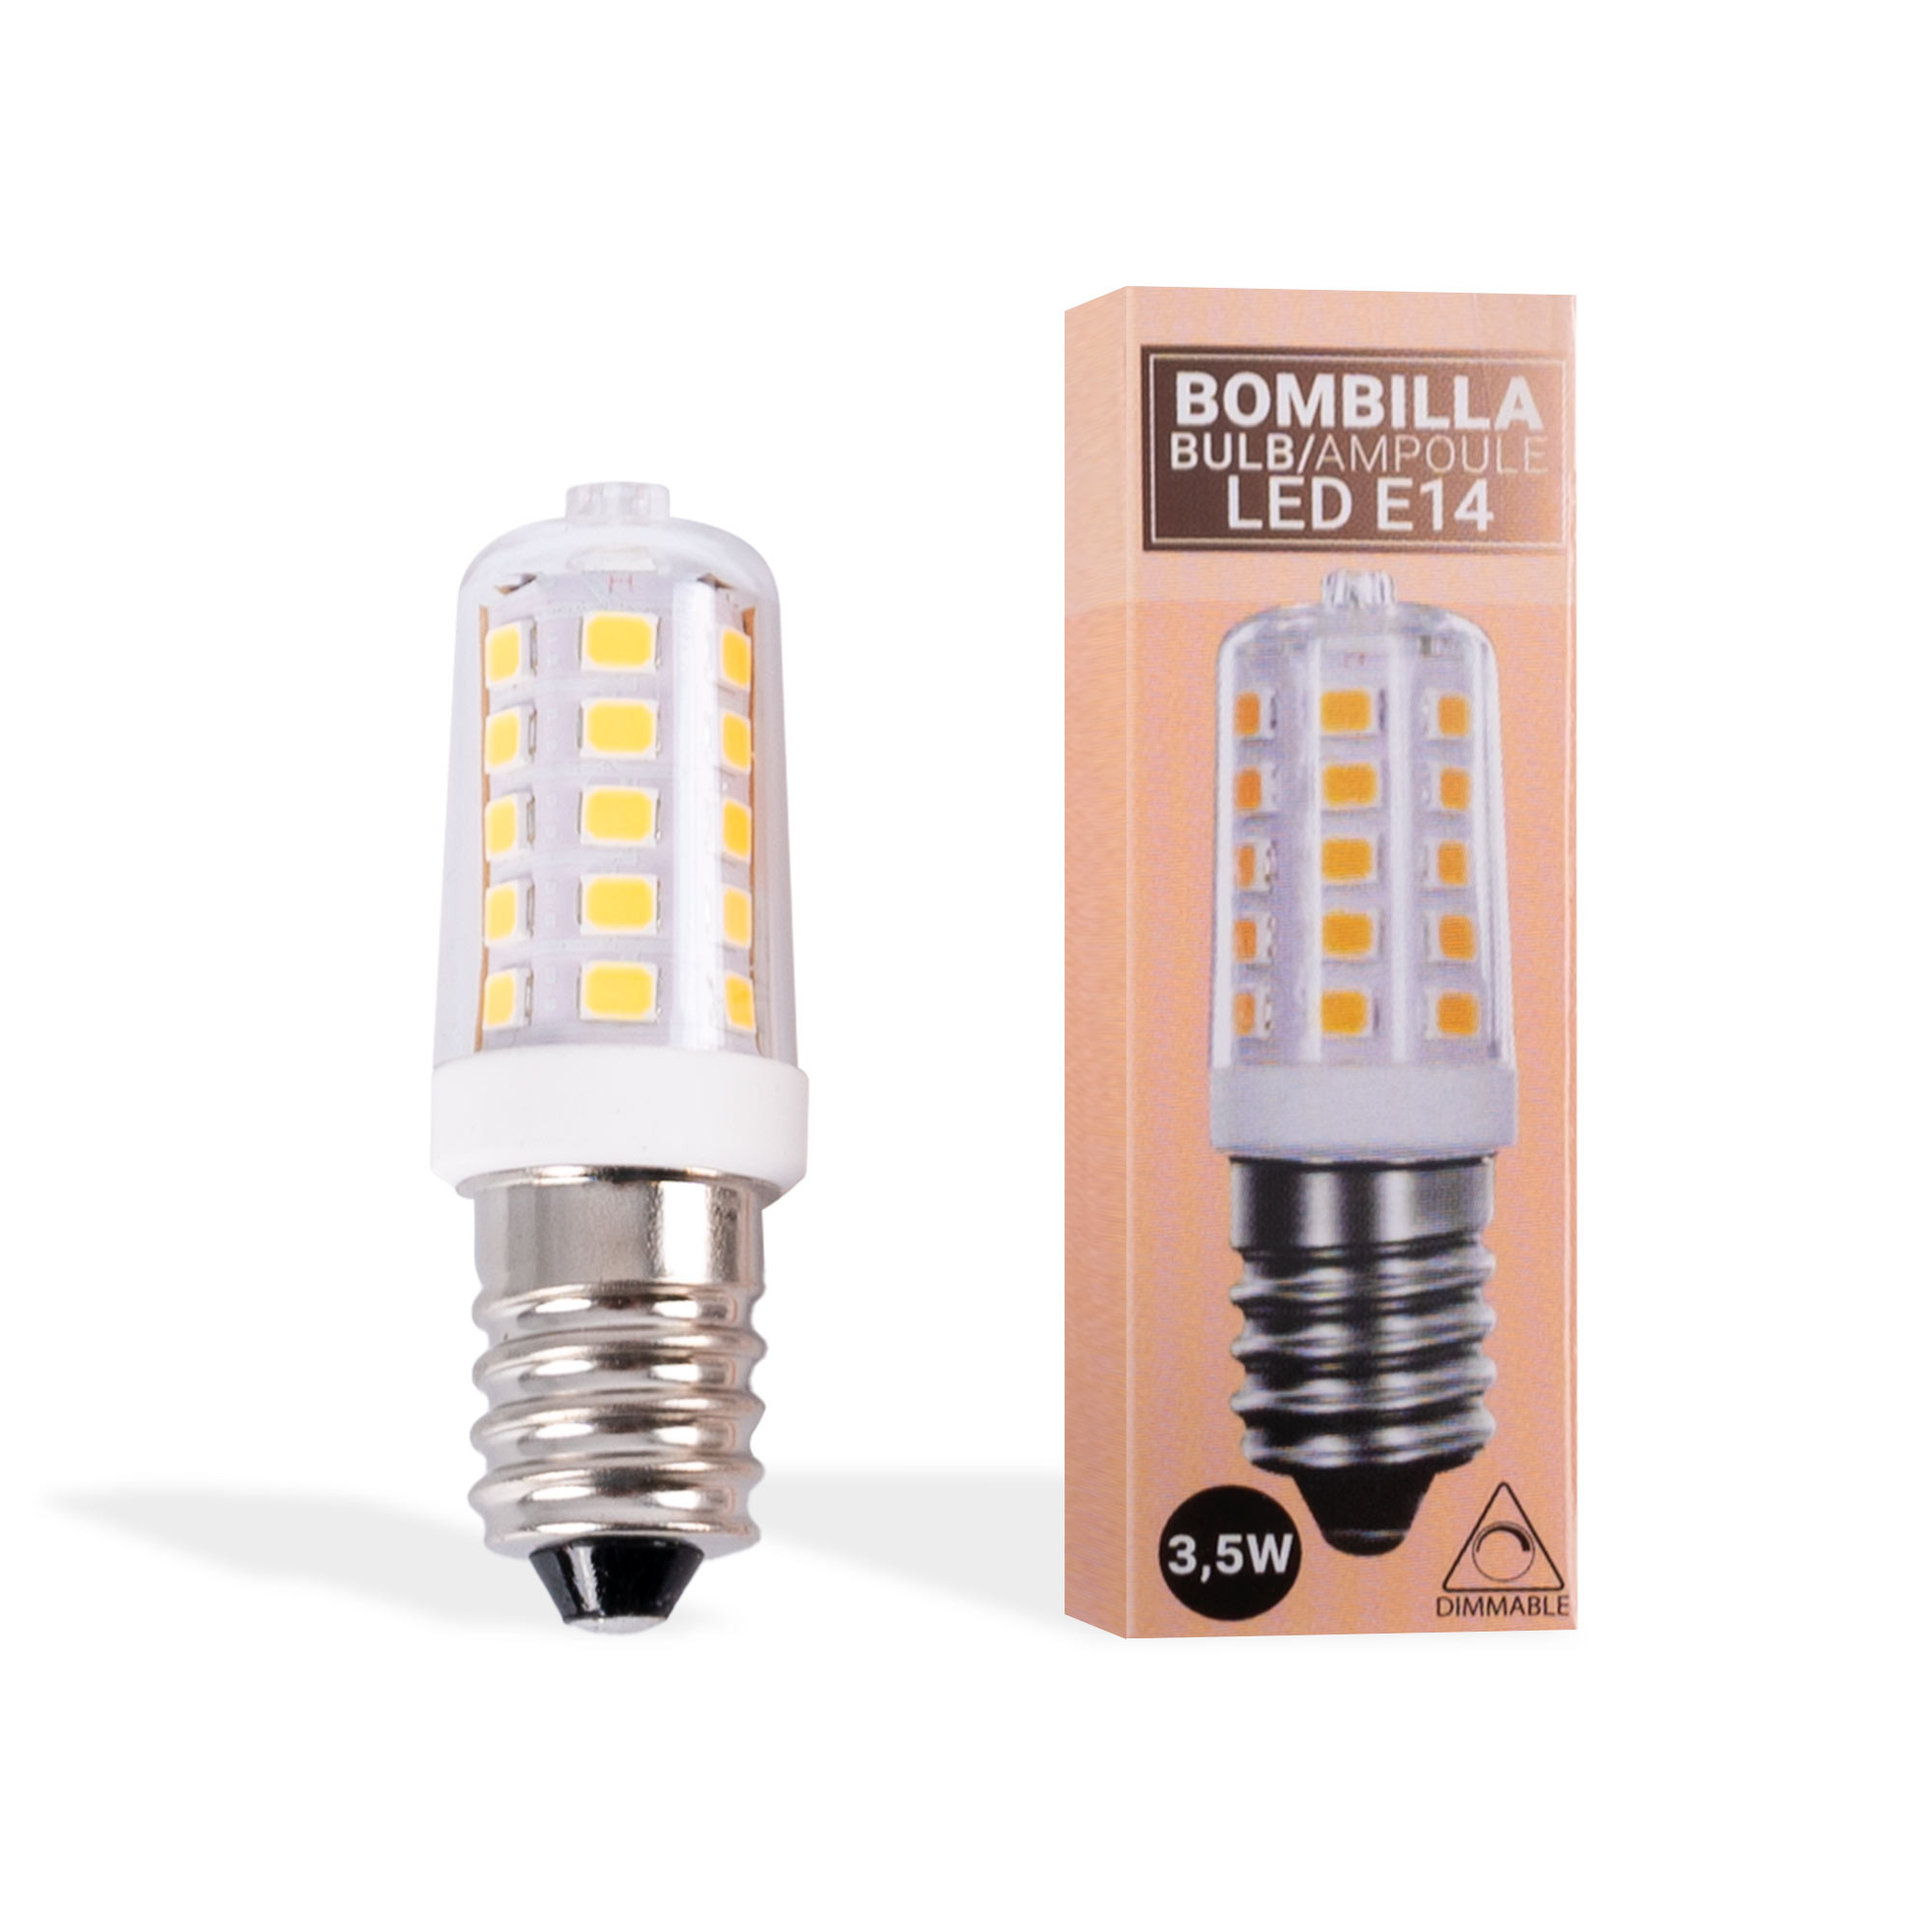 BOMBILLA E14 220V 5W IDEAL LAMPARA DE SAL & ILUMINACION